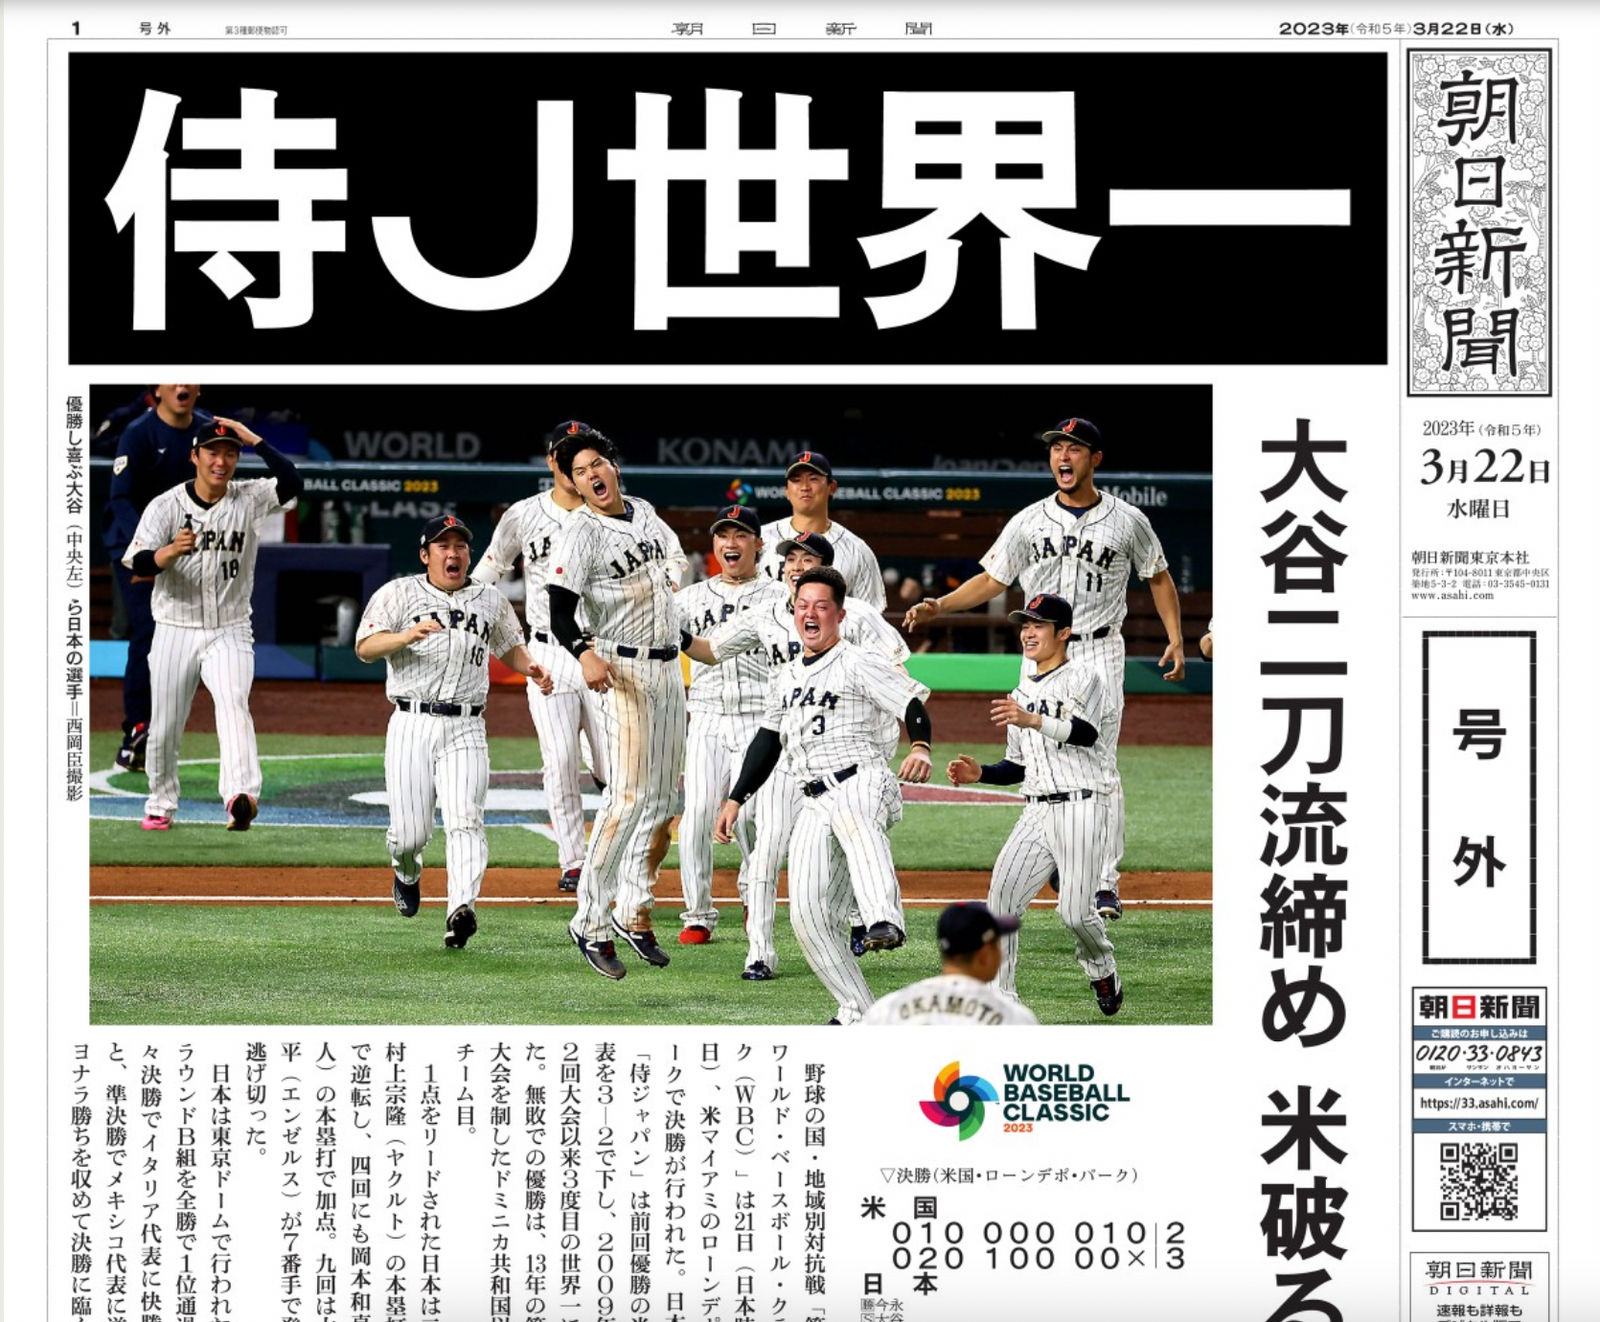 A screenshot of the evening edition of the Asahi Shimbun newspaper.